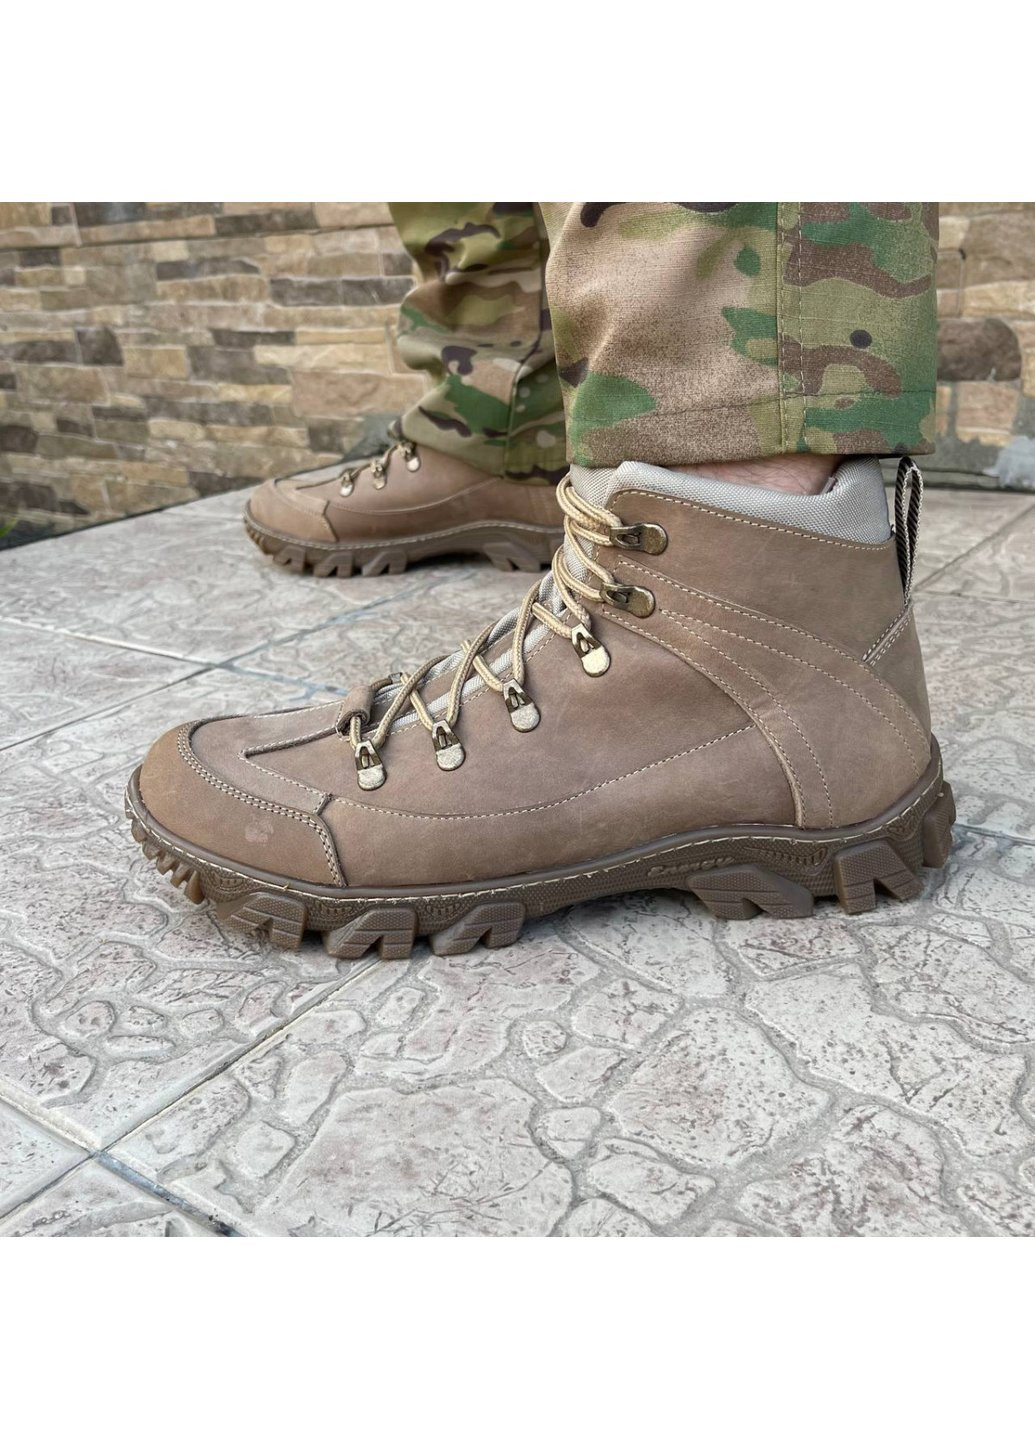 Коричневые осенние ботинки военные тактические всу (зсу) 7522 43 р 28,5 см коричневые Power